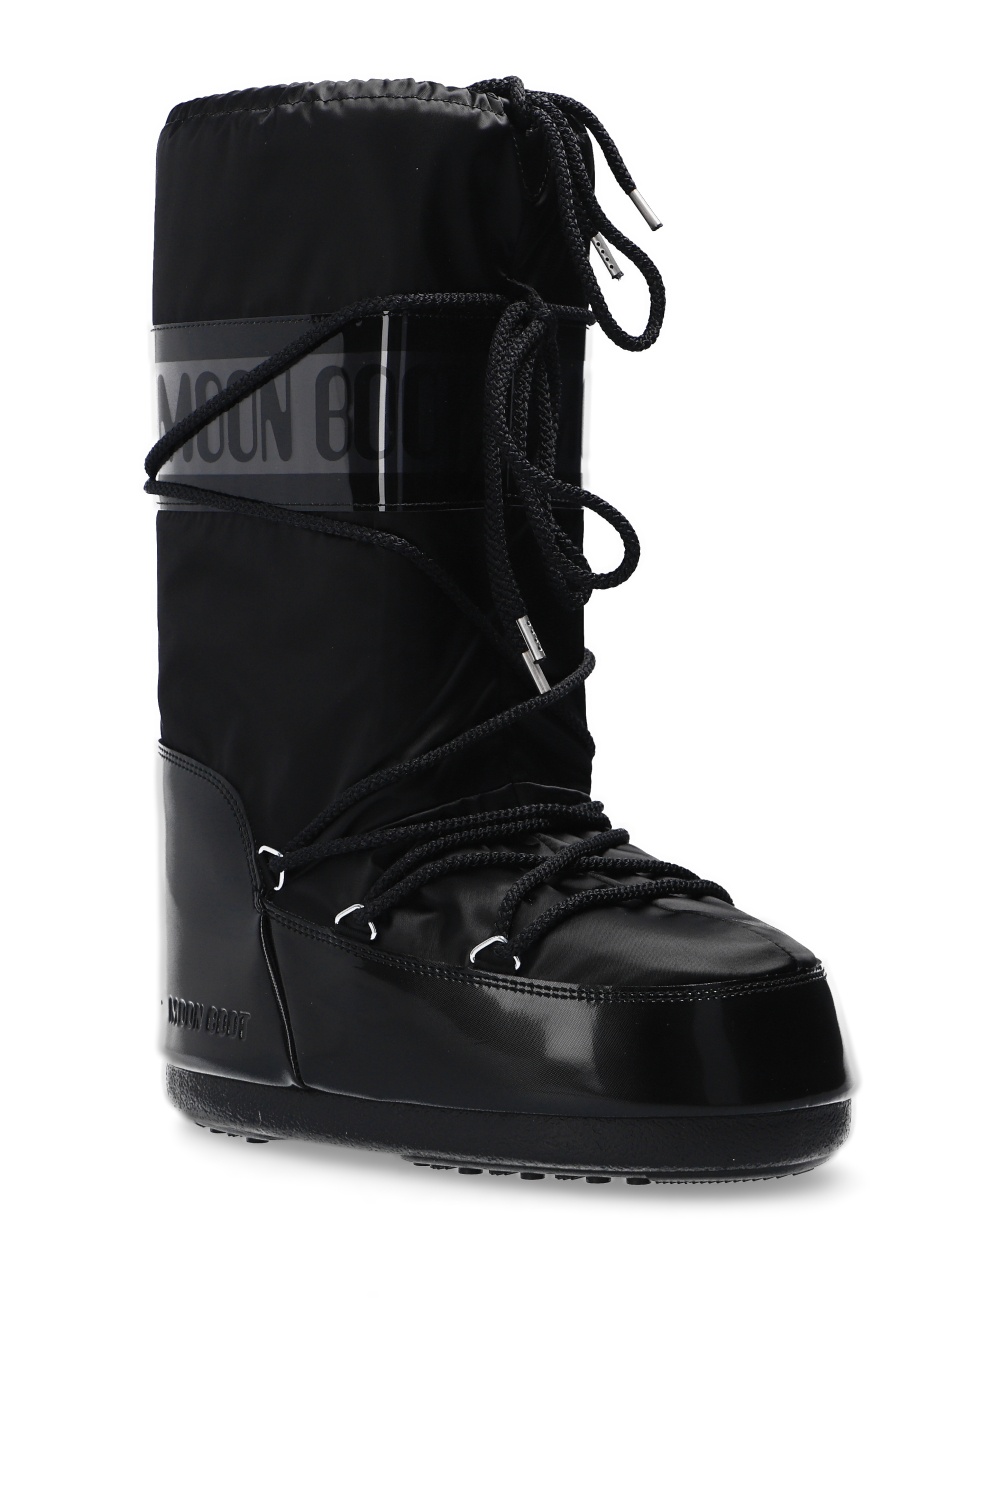 zapatillas de running Saucony niño niña apoyo talón talla 42.5 negras Black 'Glance' snow Moon Boot - IetpShops Australia